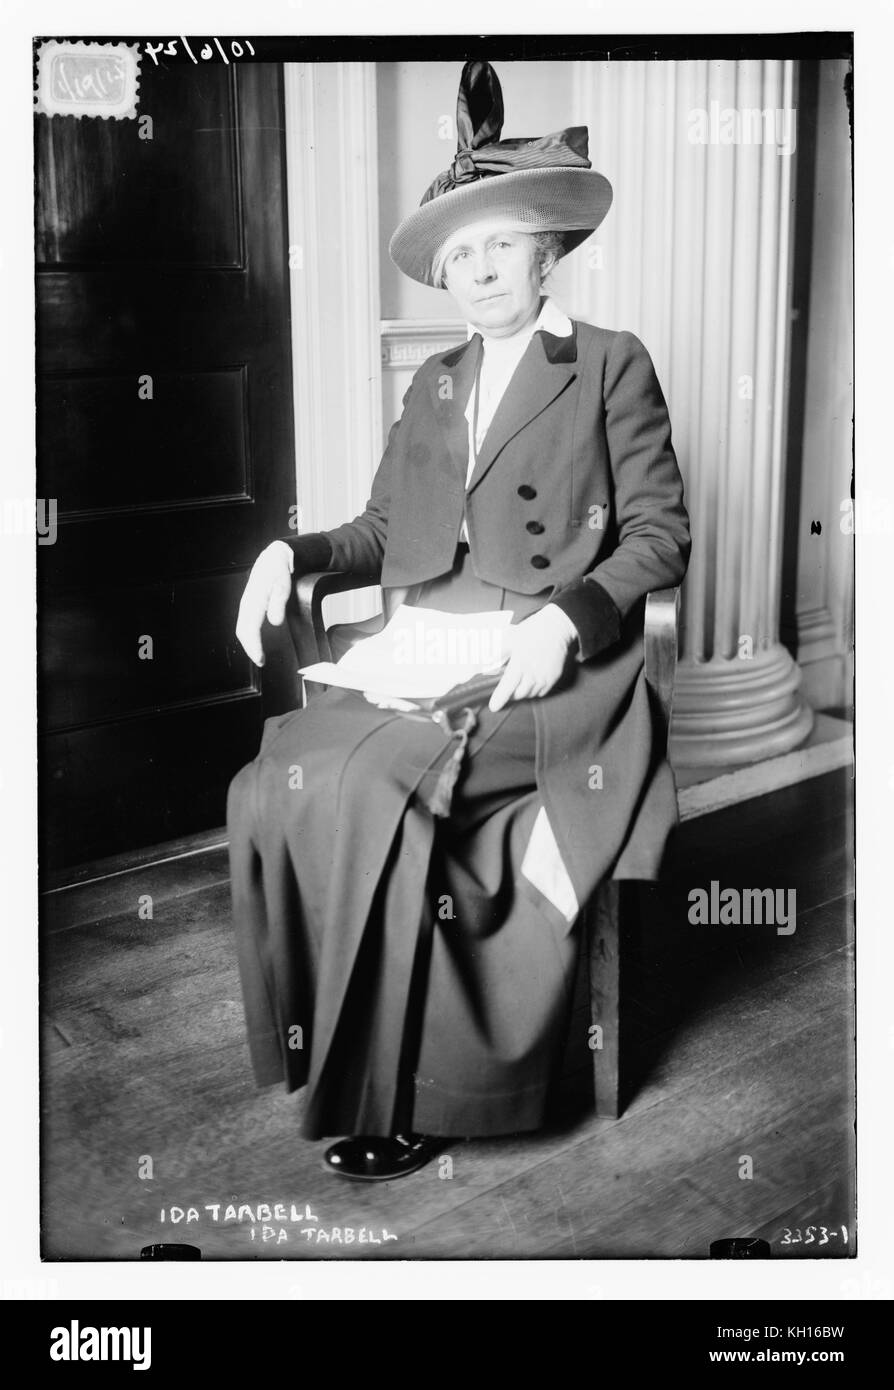 Retrato de Ida Tarbell Minerva (1857-1944), autor y periodista muckraking, Washington, DC, 01/19/1915. Foto por el Servicio de Noticias Bain Foto de stock